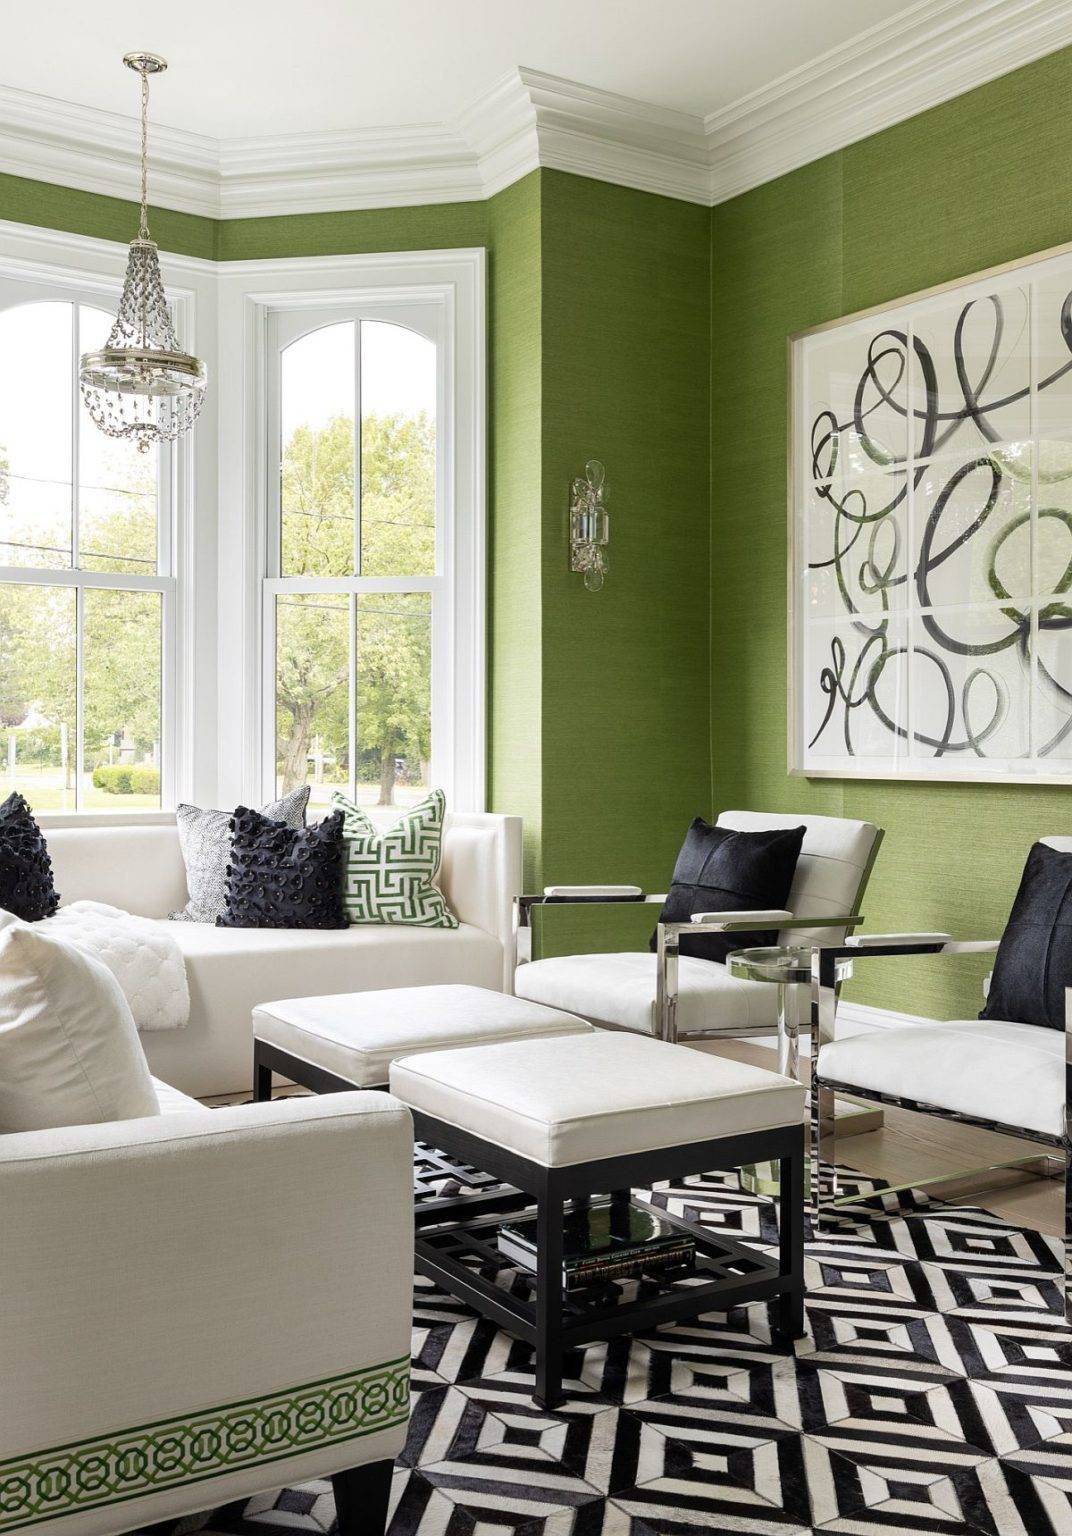 Phòng khách hiện đại, thời thượng với những bức tường màu xanh lá pastel nhẹ nhàng, trang nhã tạo cảm giác thư thái.